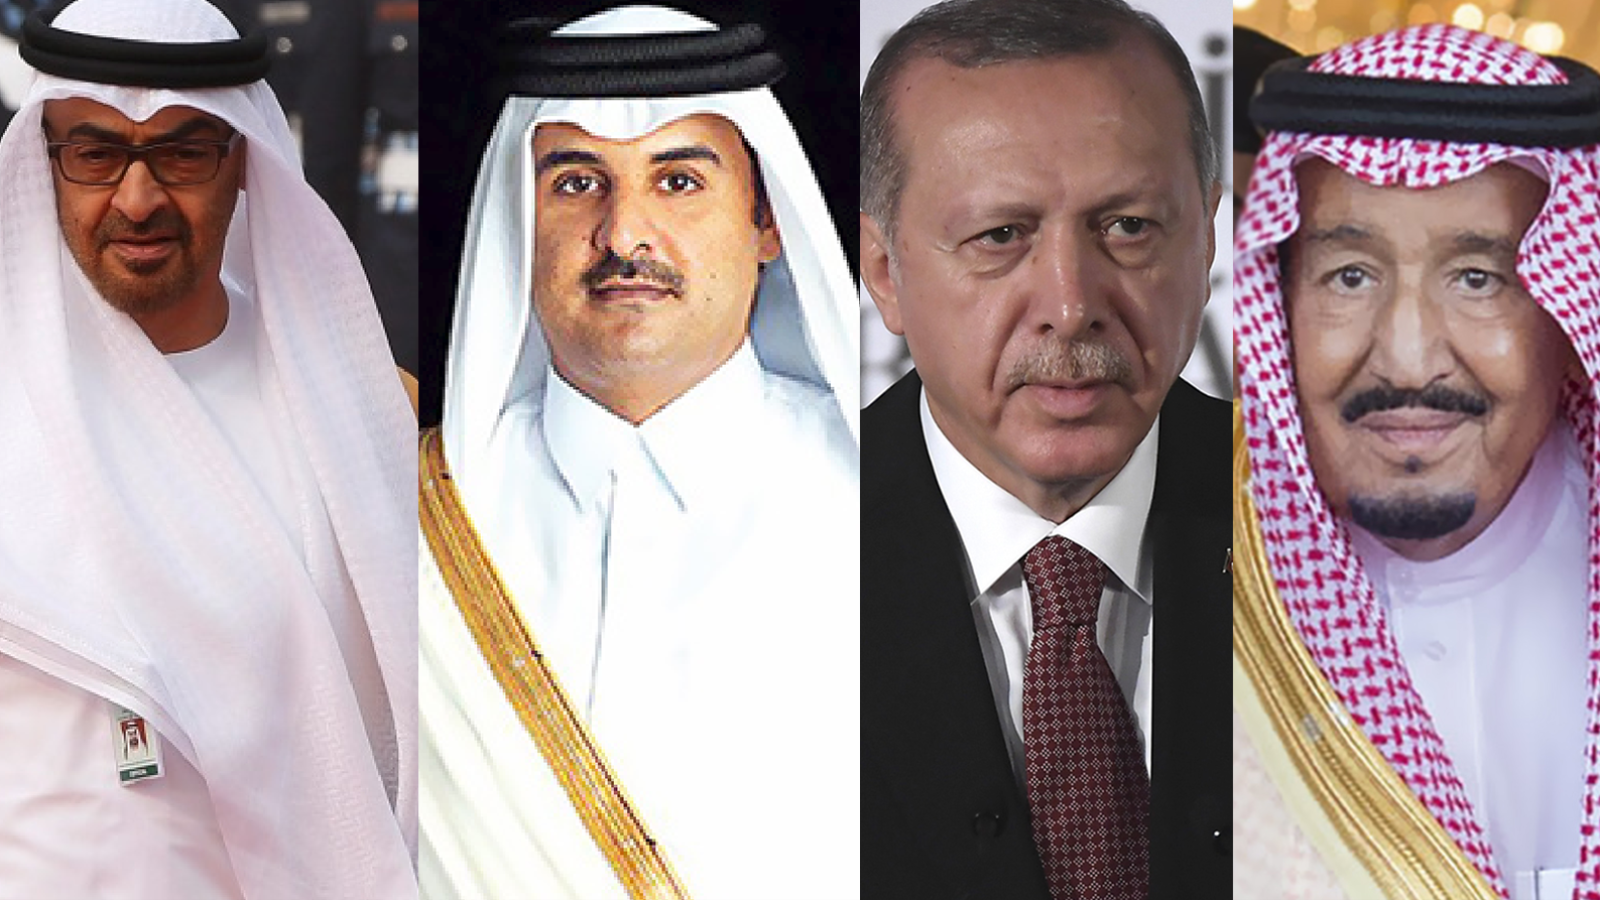 السعودية وتركيا وقطر والإمارات وجدوا أنفسهم في الحلبة السياسية لمقديشو كانعكاس لصراعهم في الإقليم ككل في السنوات الأخيرة